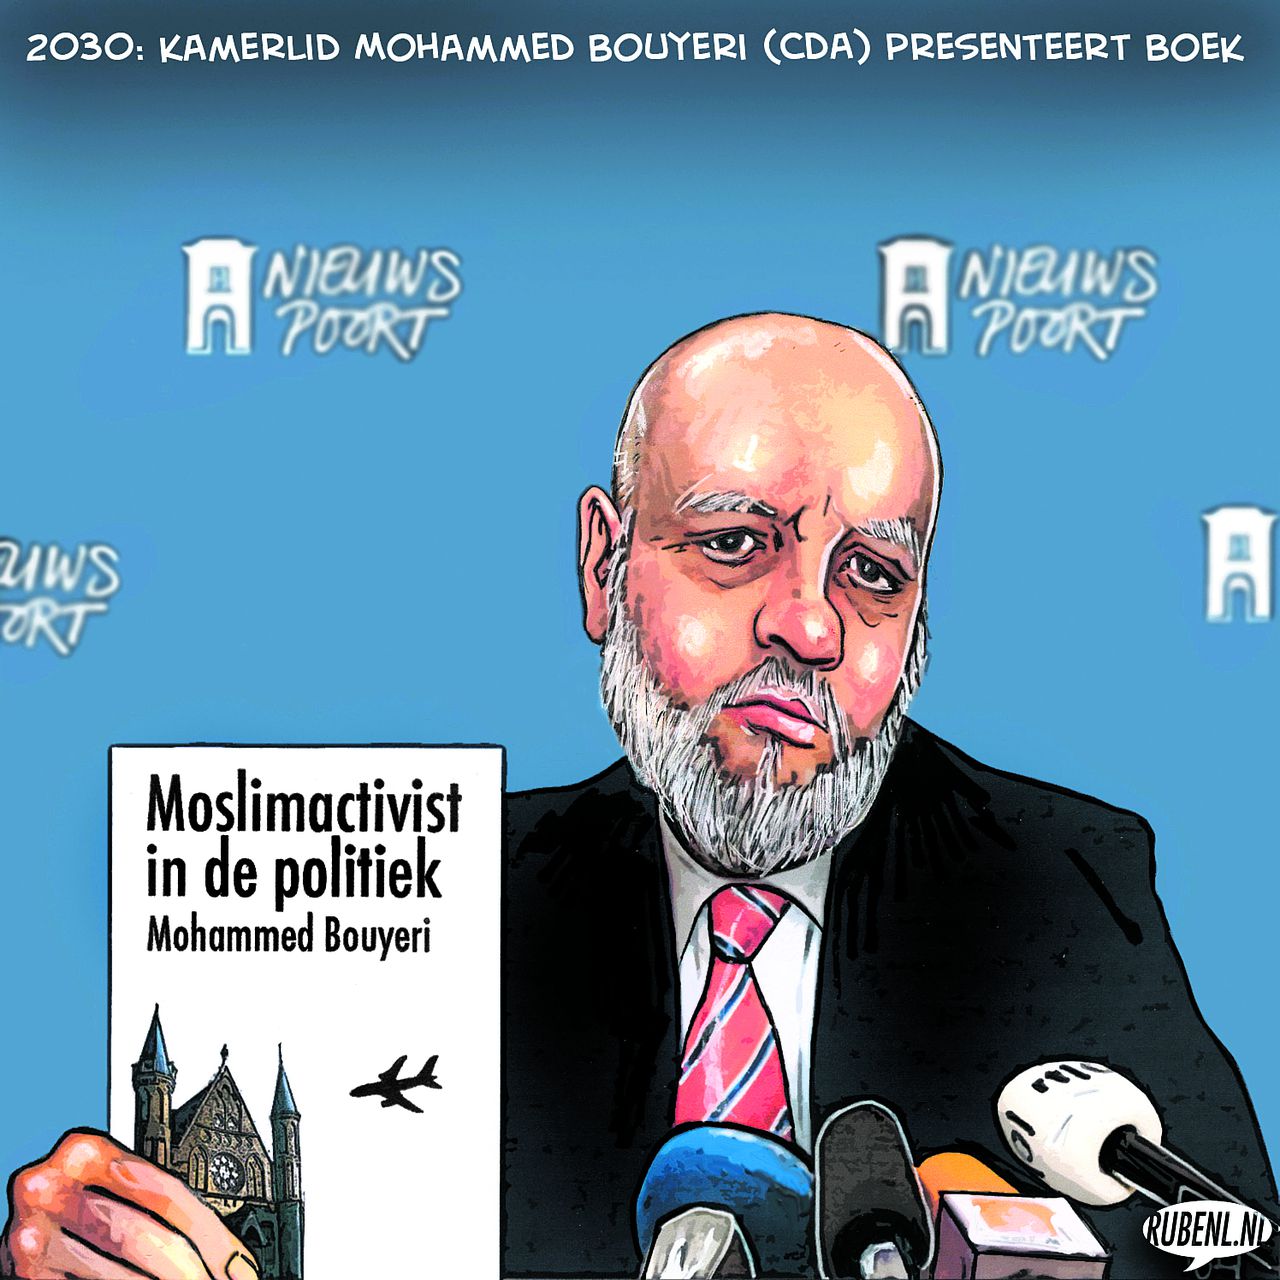 Moslimactivist in de politiek Mohammed Bouyeri 2030: Kamerlid Mohammed Bouyeri (CDA) presenteert boek